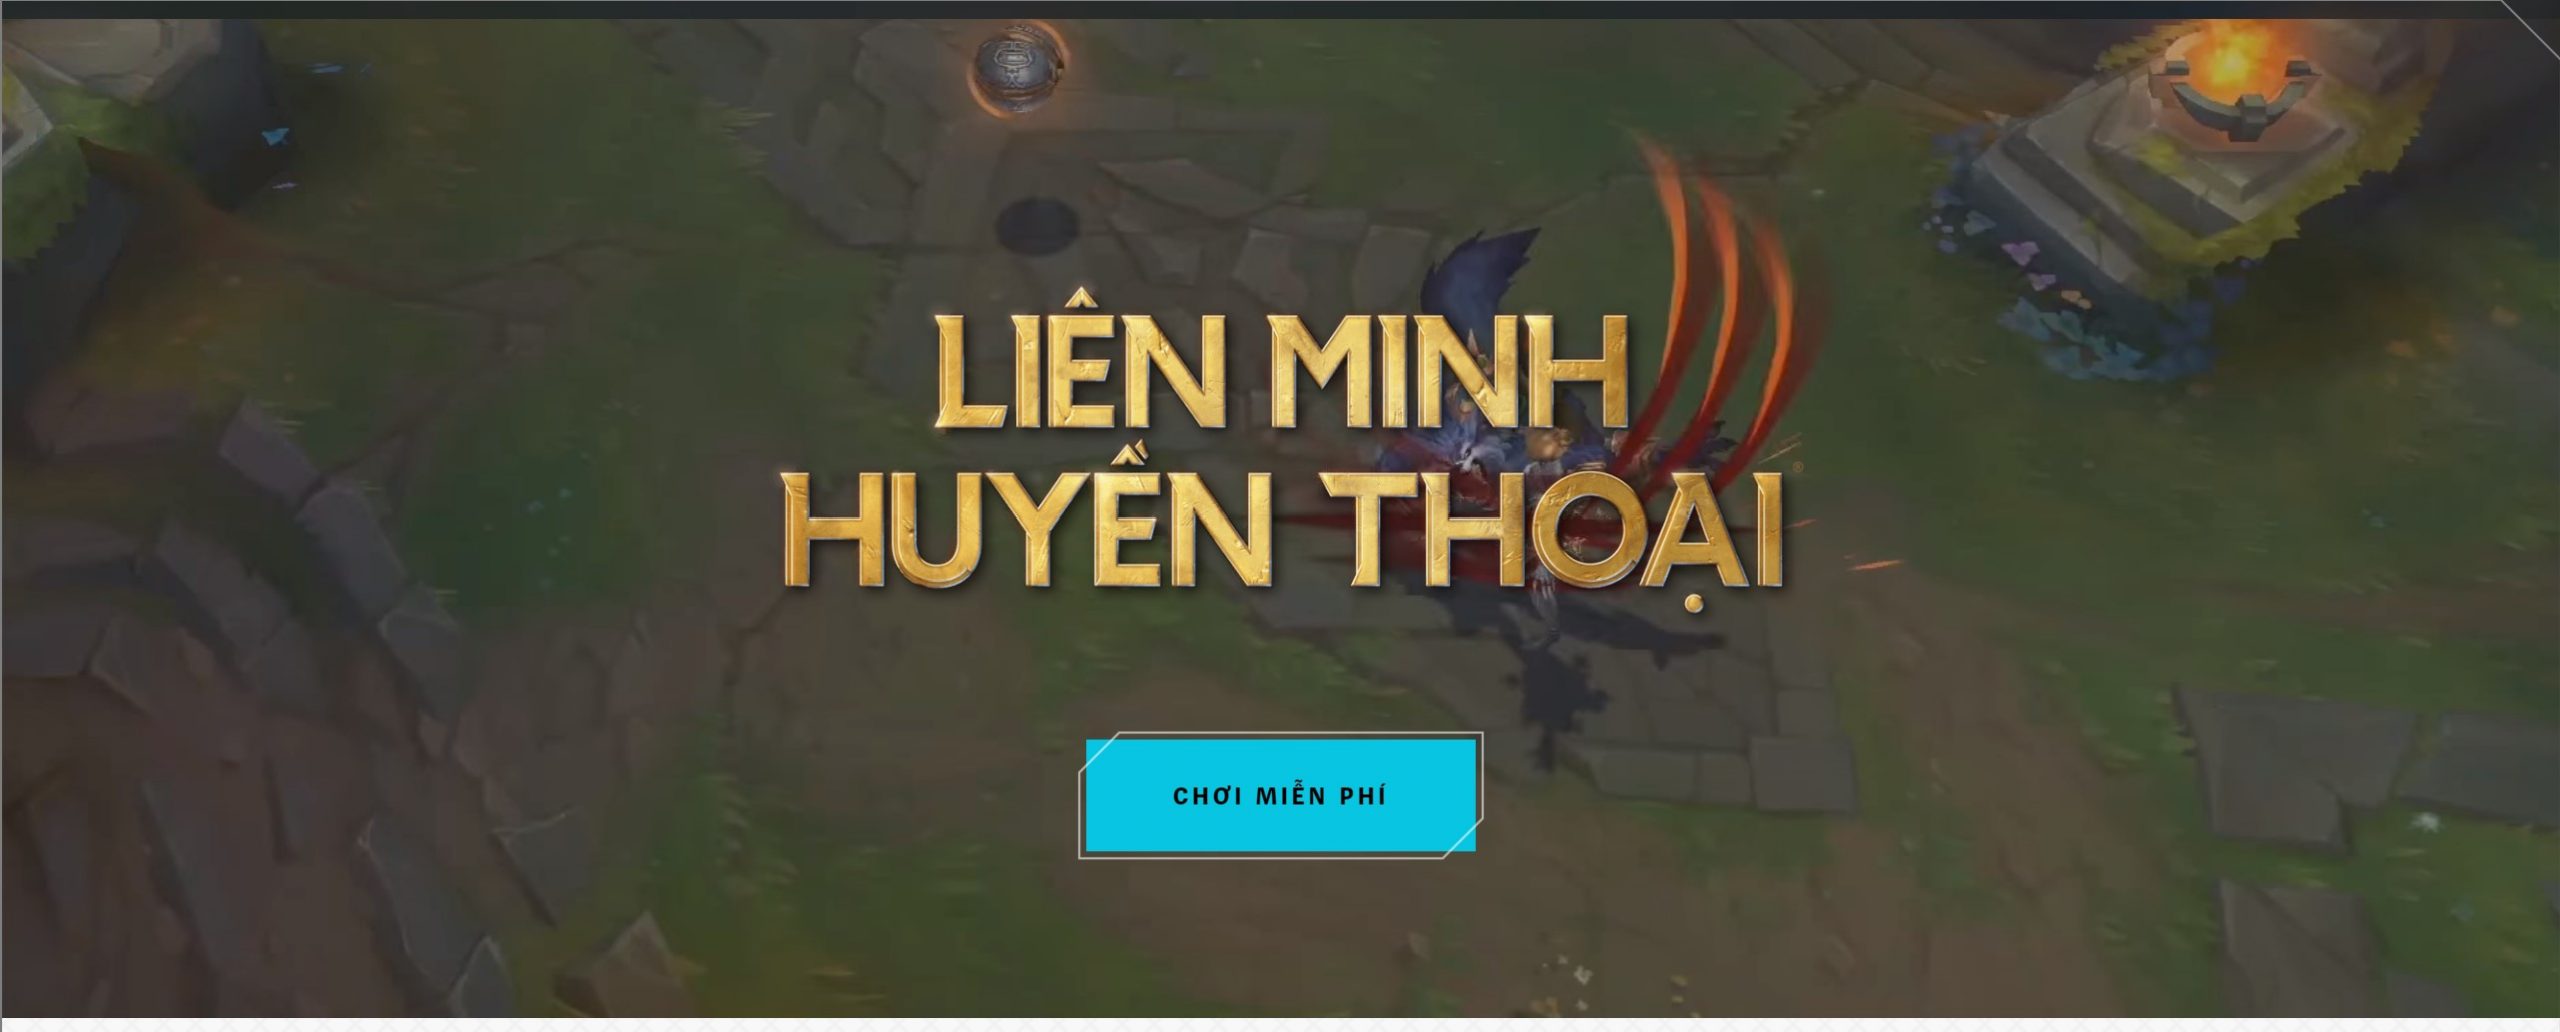 tai-lien-minh-huyen-thoai